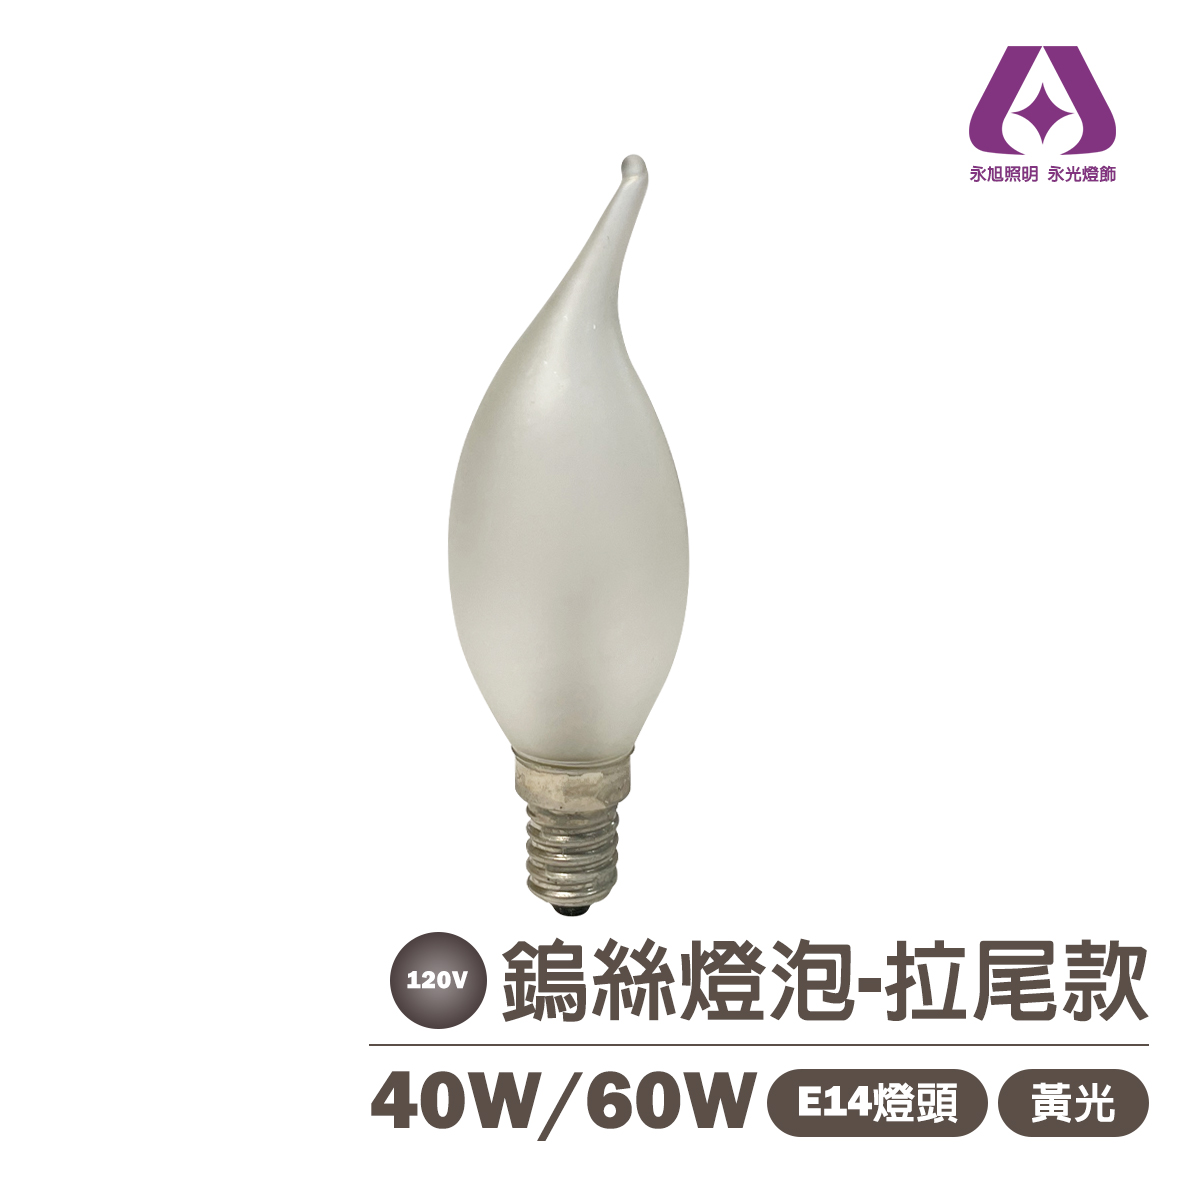 磨砂 拉尾燈泡 傳統鎢絲燈泡 E14 40w/60w  黃光 115V 可調光 